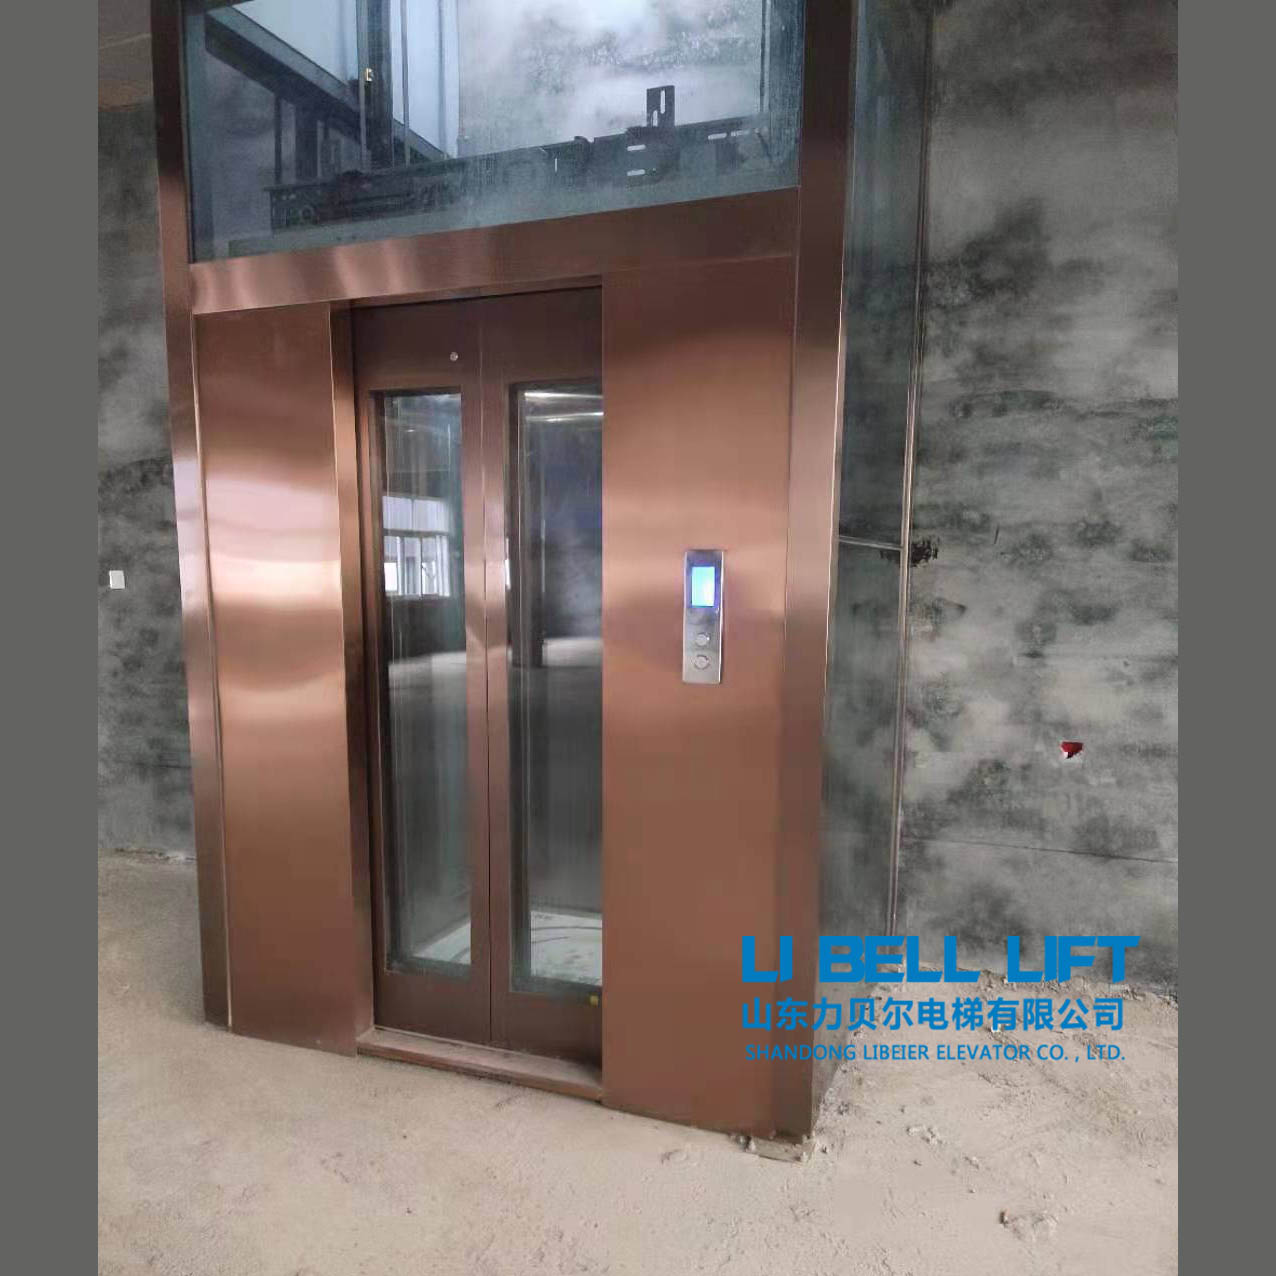 私人订制 力贝尔别墅小型电梯 家用电梯 二层观光复式电梯 家庭简易电梯1